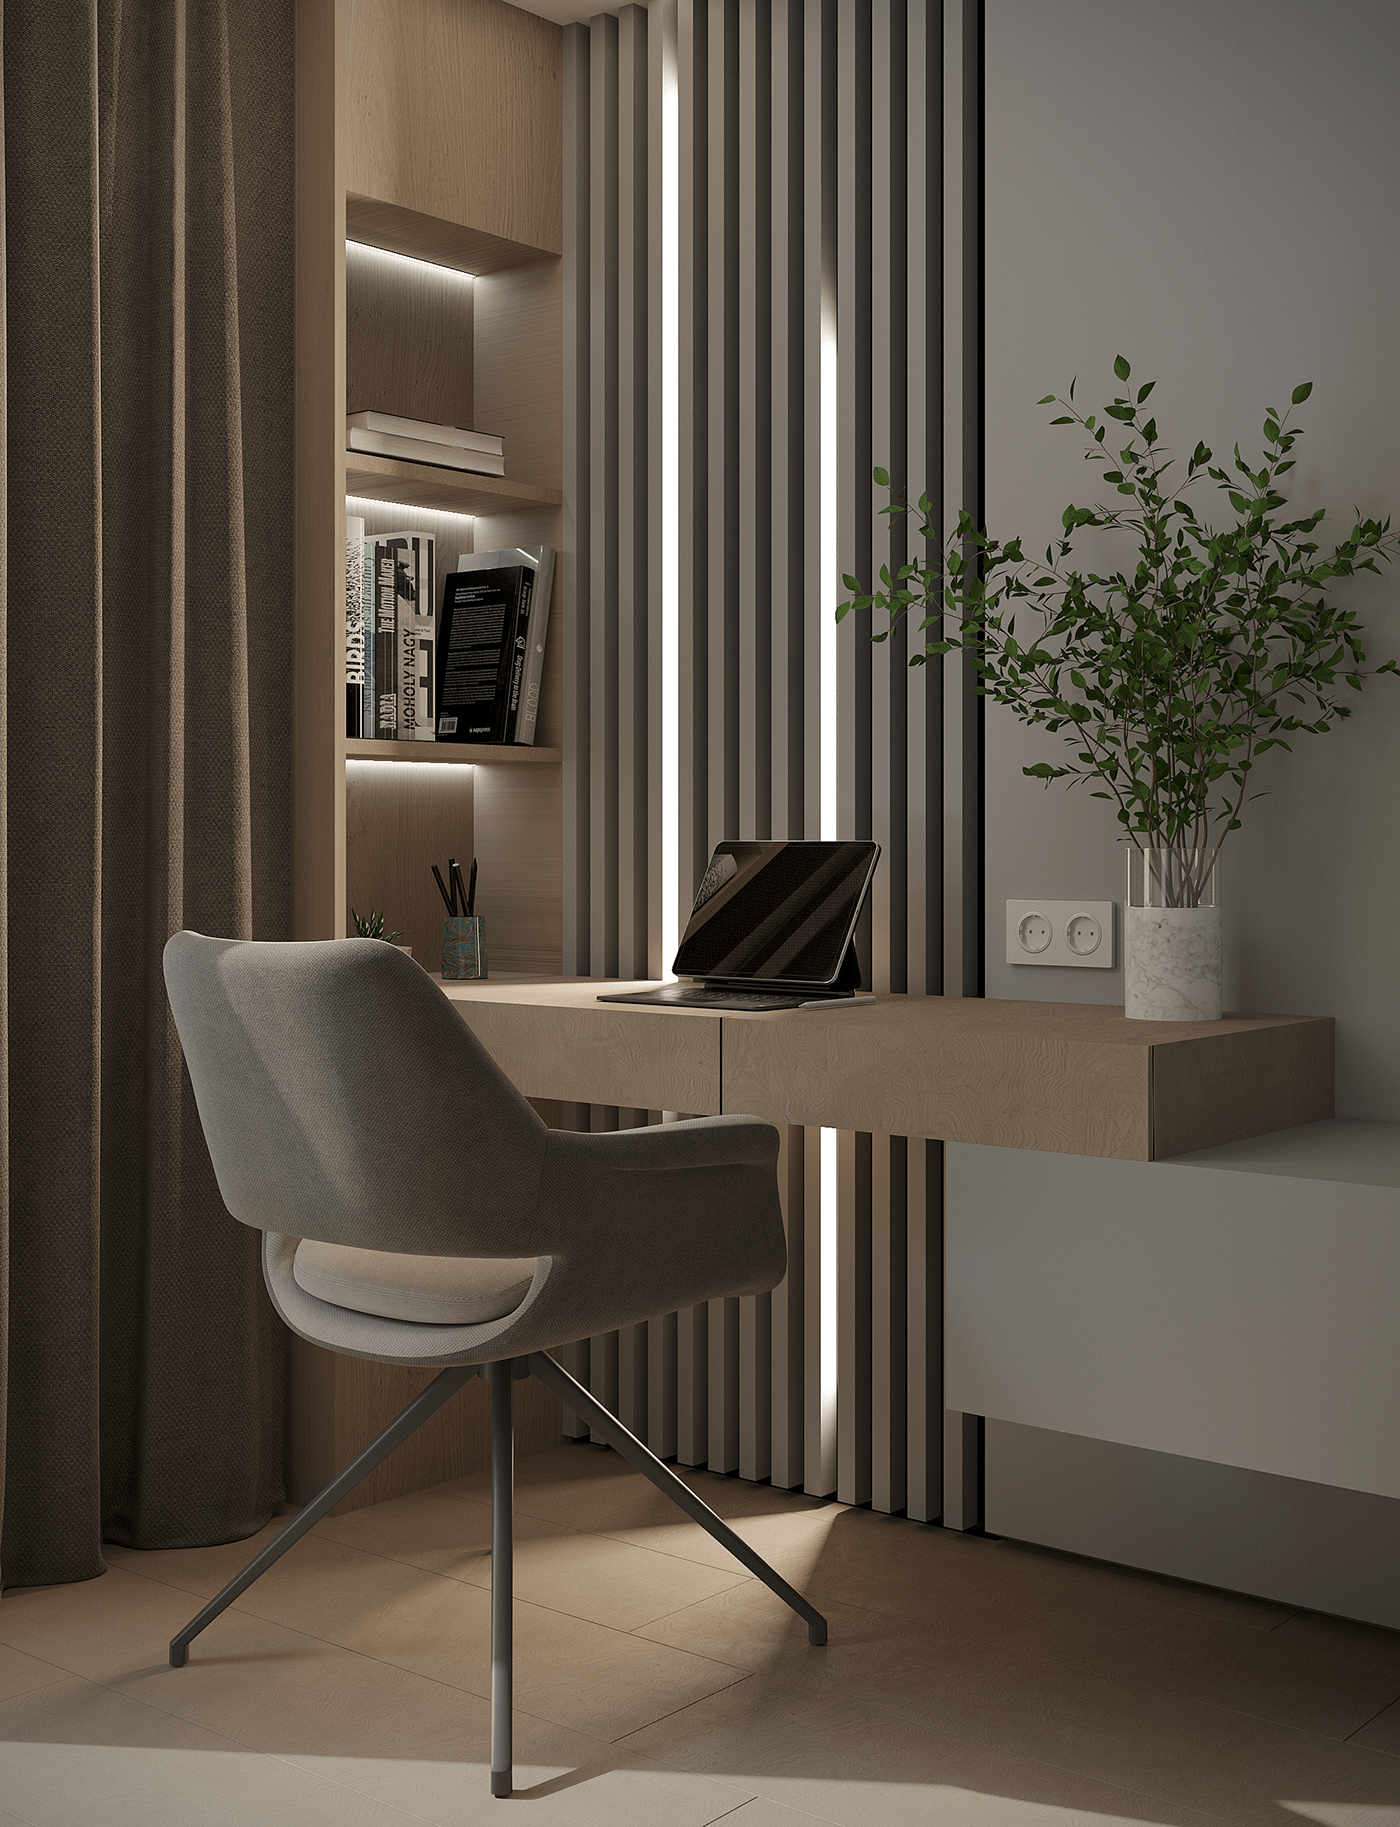 3ds max corona render  visualization interior design  cabinet interior home office